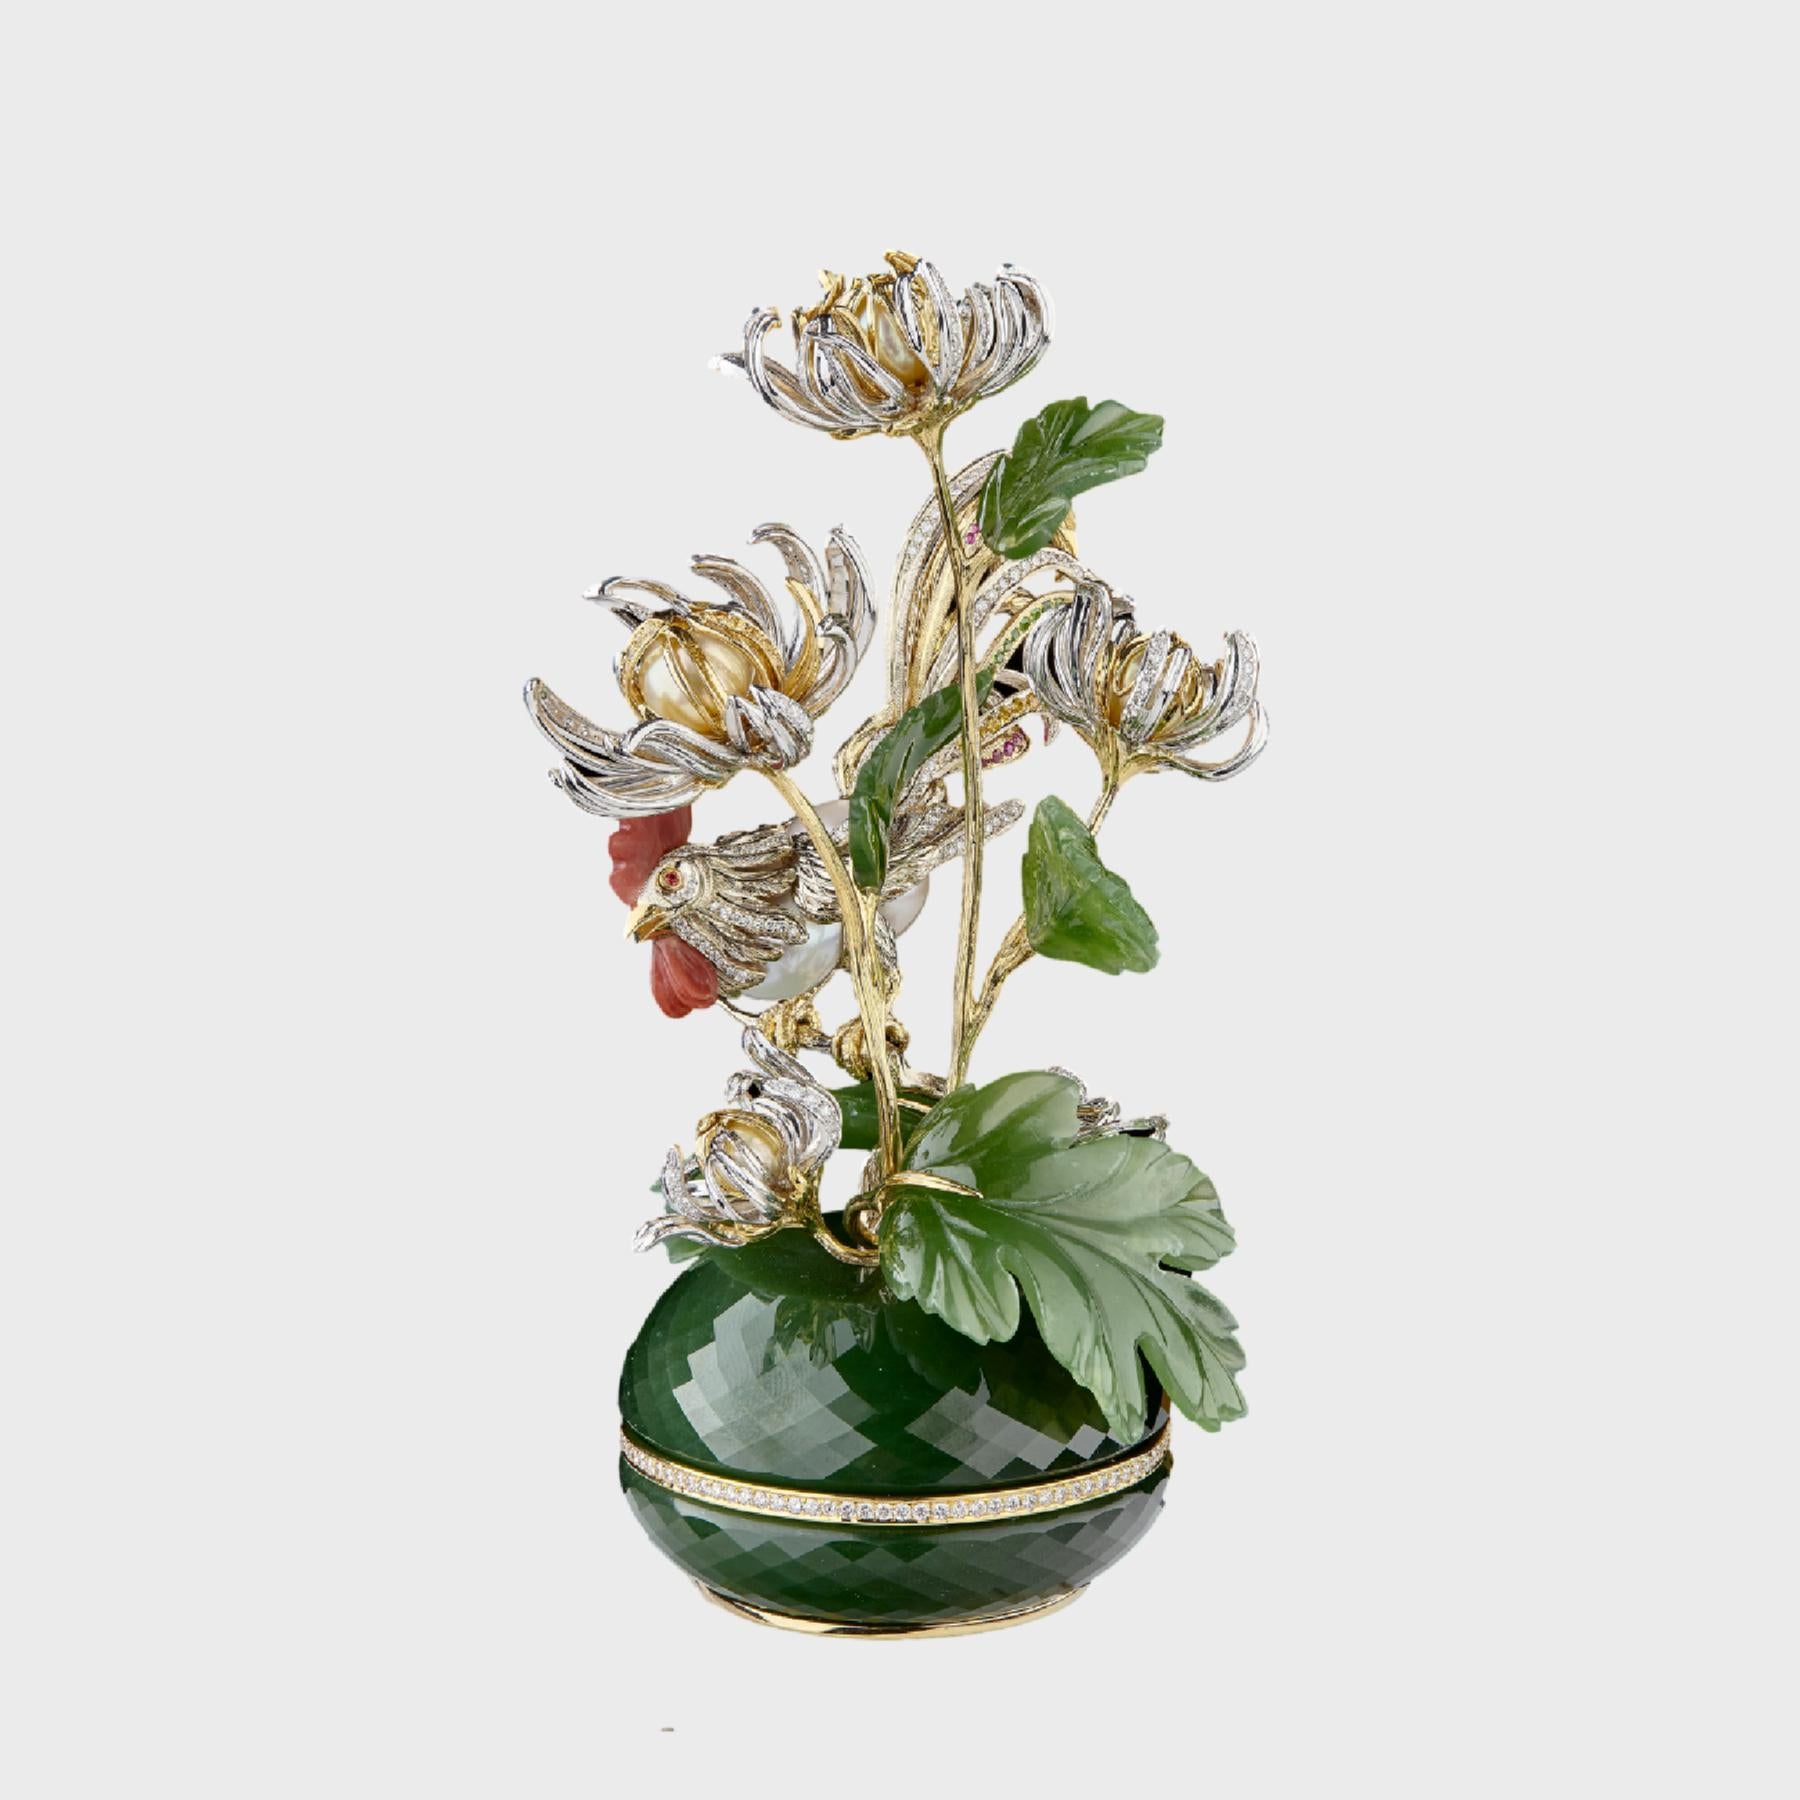  Eine exquisite florale Miniatur mit Chrysanthemen und einem goldenen Hahn wurde in Anlehnung an das ostasiatische Gemälde 